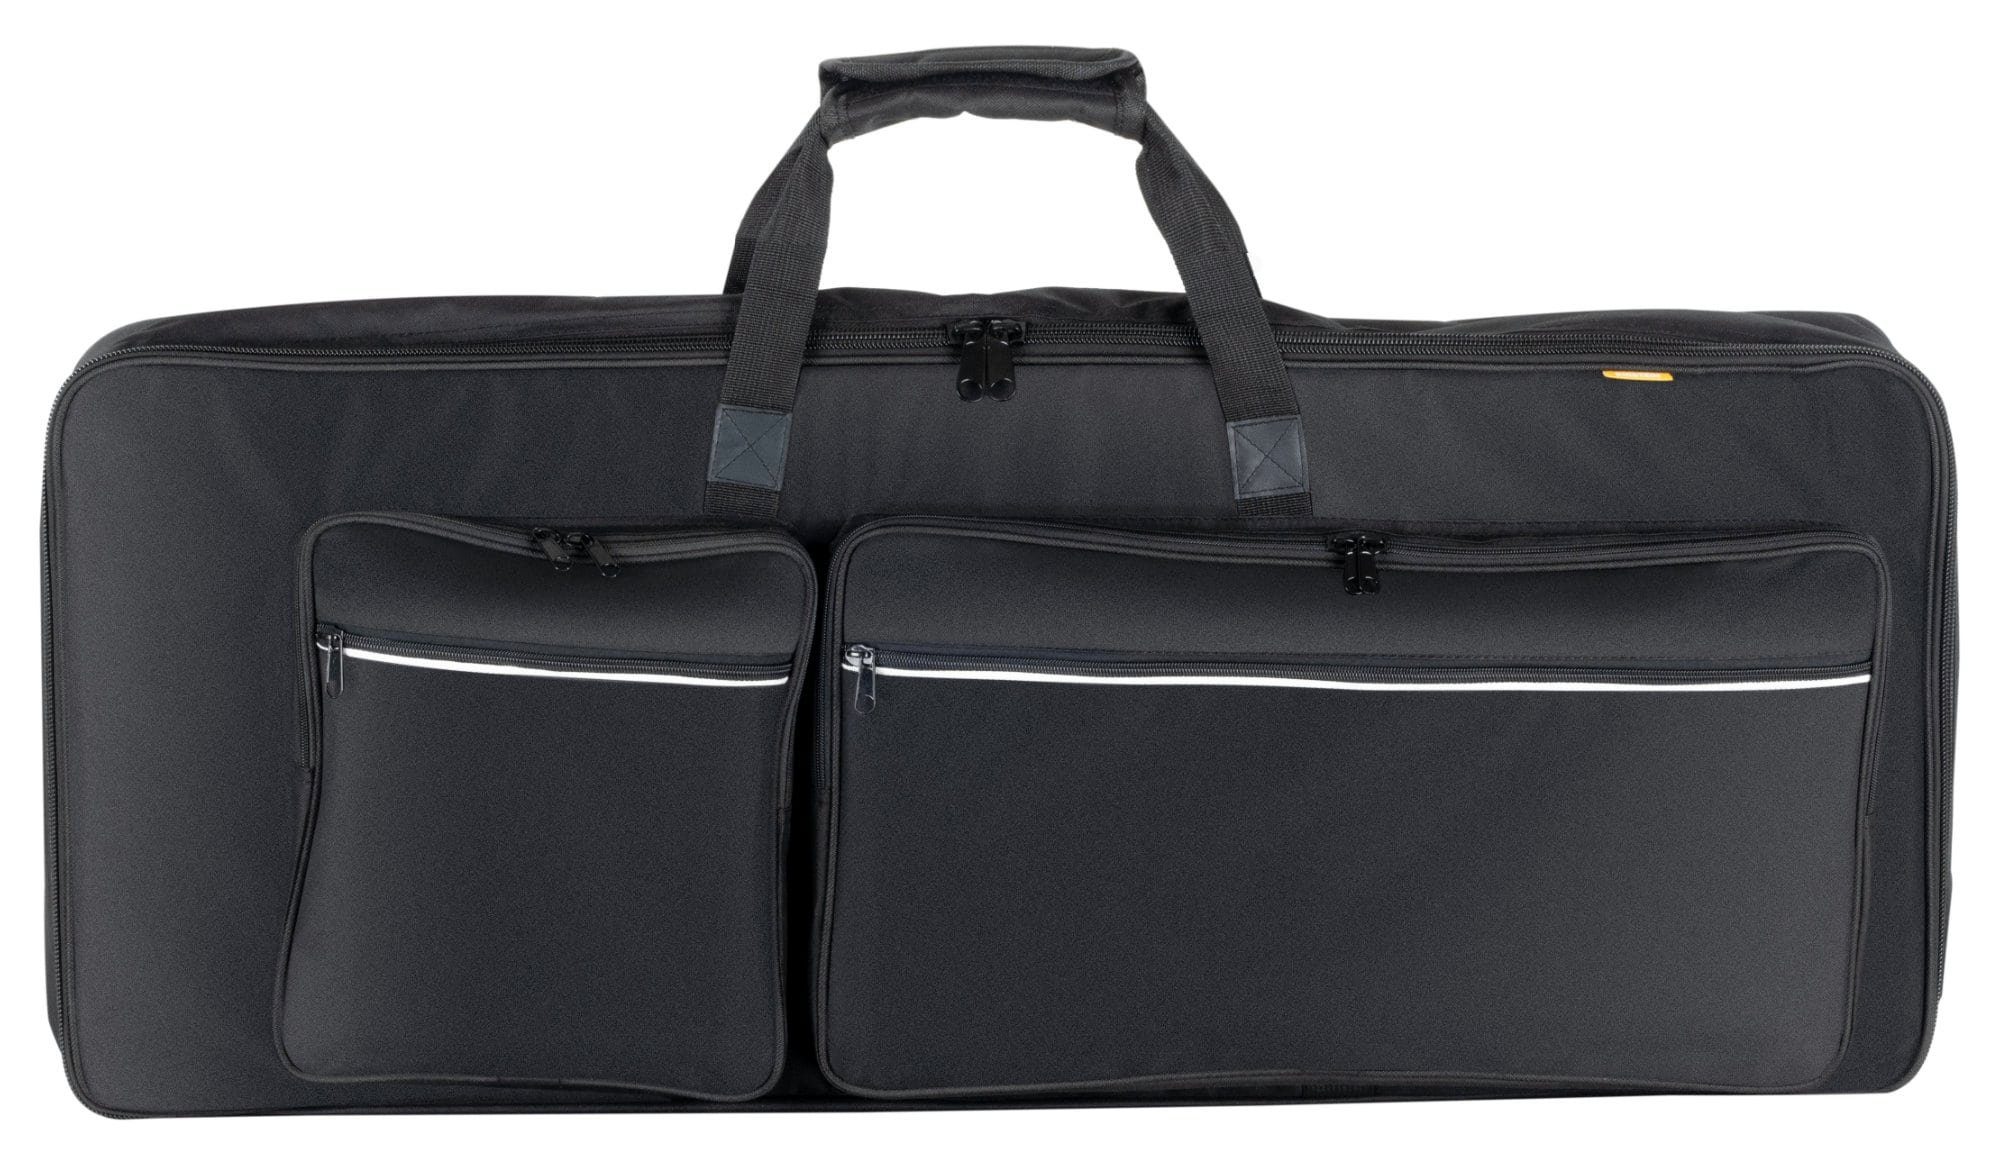 McGrey Piano-Transporttasche Ecobag Keyboardtasche Größe B, Verstellbare Rucksackgurte - 2 große Außentaschen